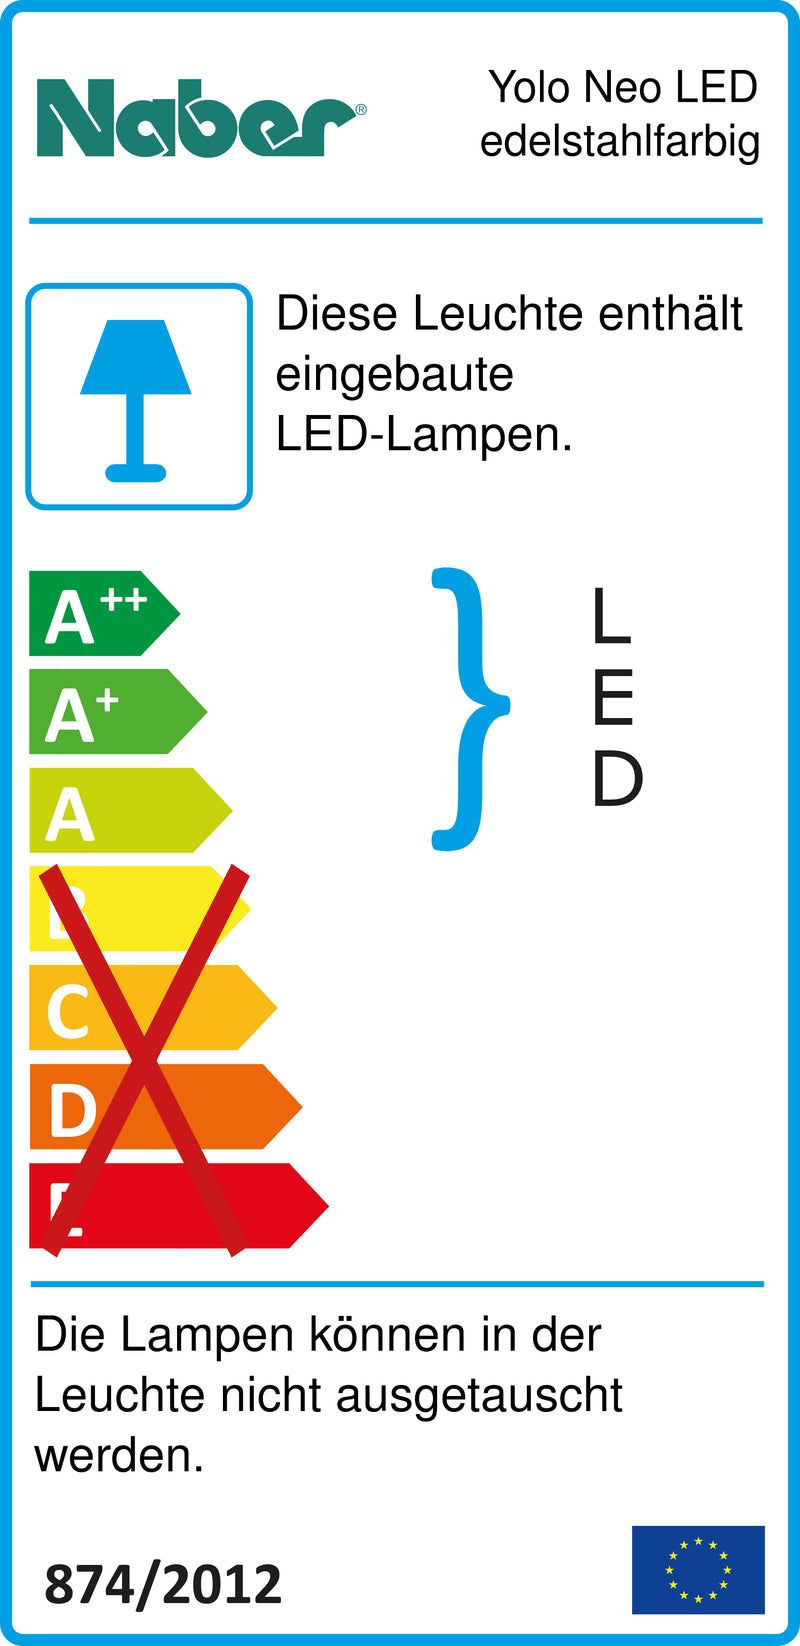 E-Label zu Zeichnung zu Yolo Neo LED edelstahlfarbig als Variante Set-5, 4000 K neutralweiß von Naber GmbH in der Kategorie Lichttechnik in Österreich auf conceptshop.at